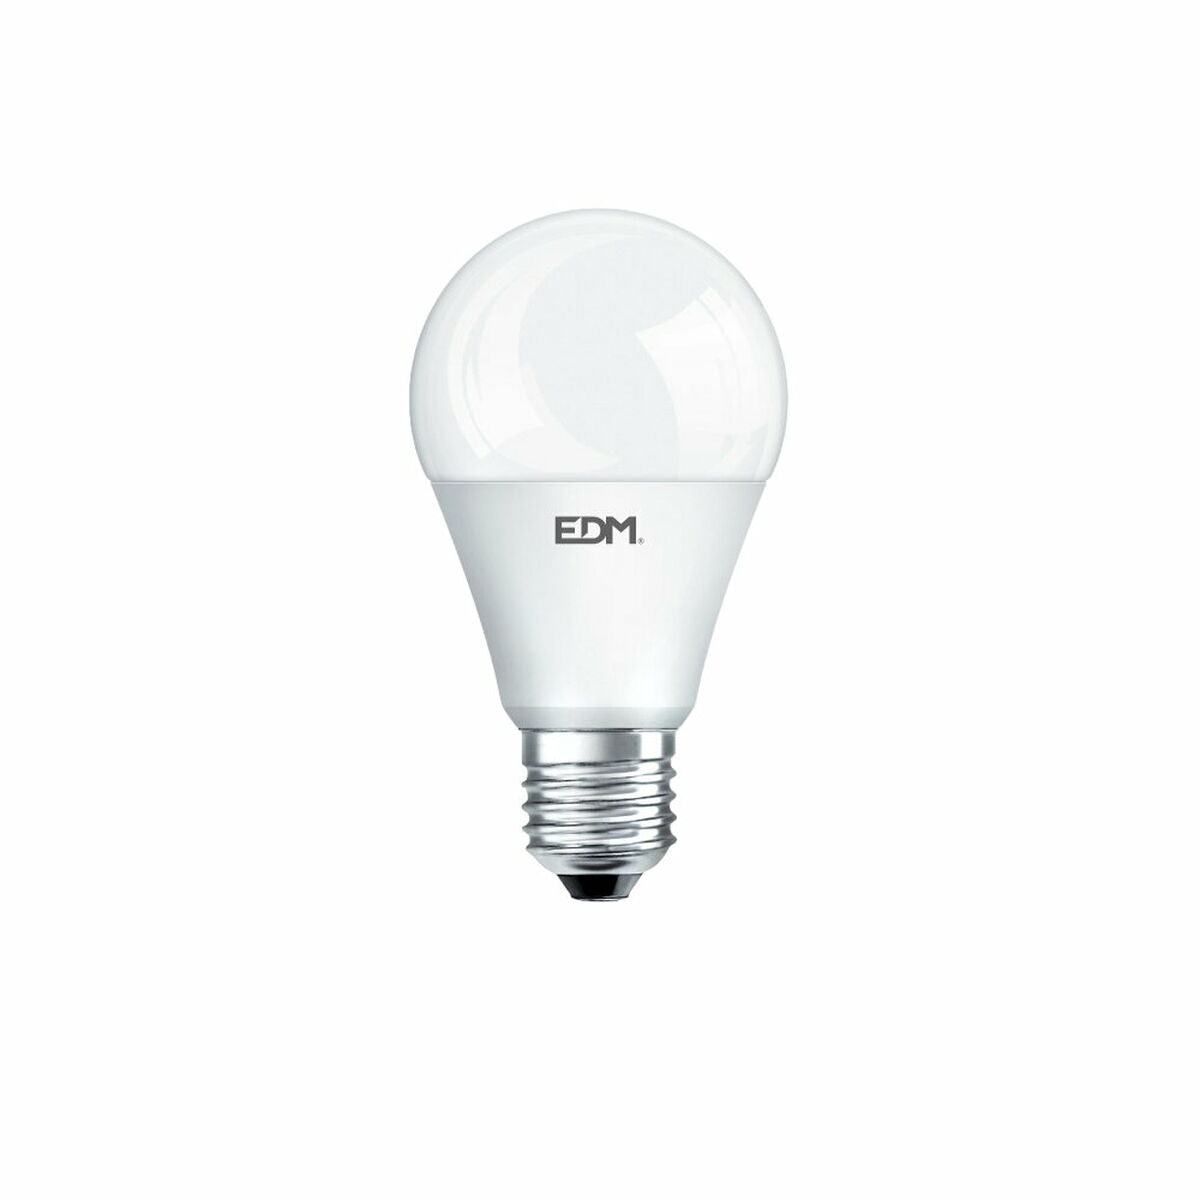 Ledlamp EDM Standard 10 W E27 810 Lm Ø 5,9 x 11 cm (3200 K)